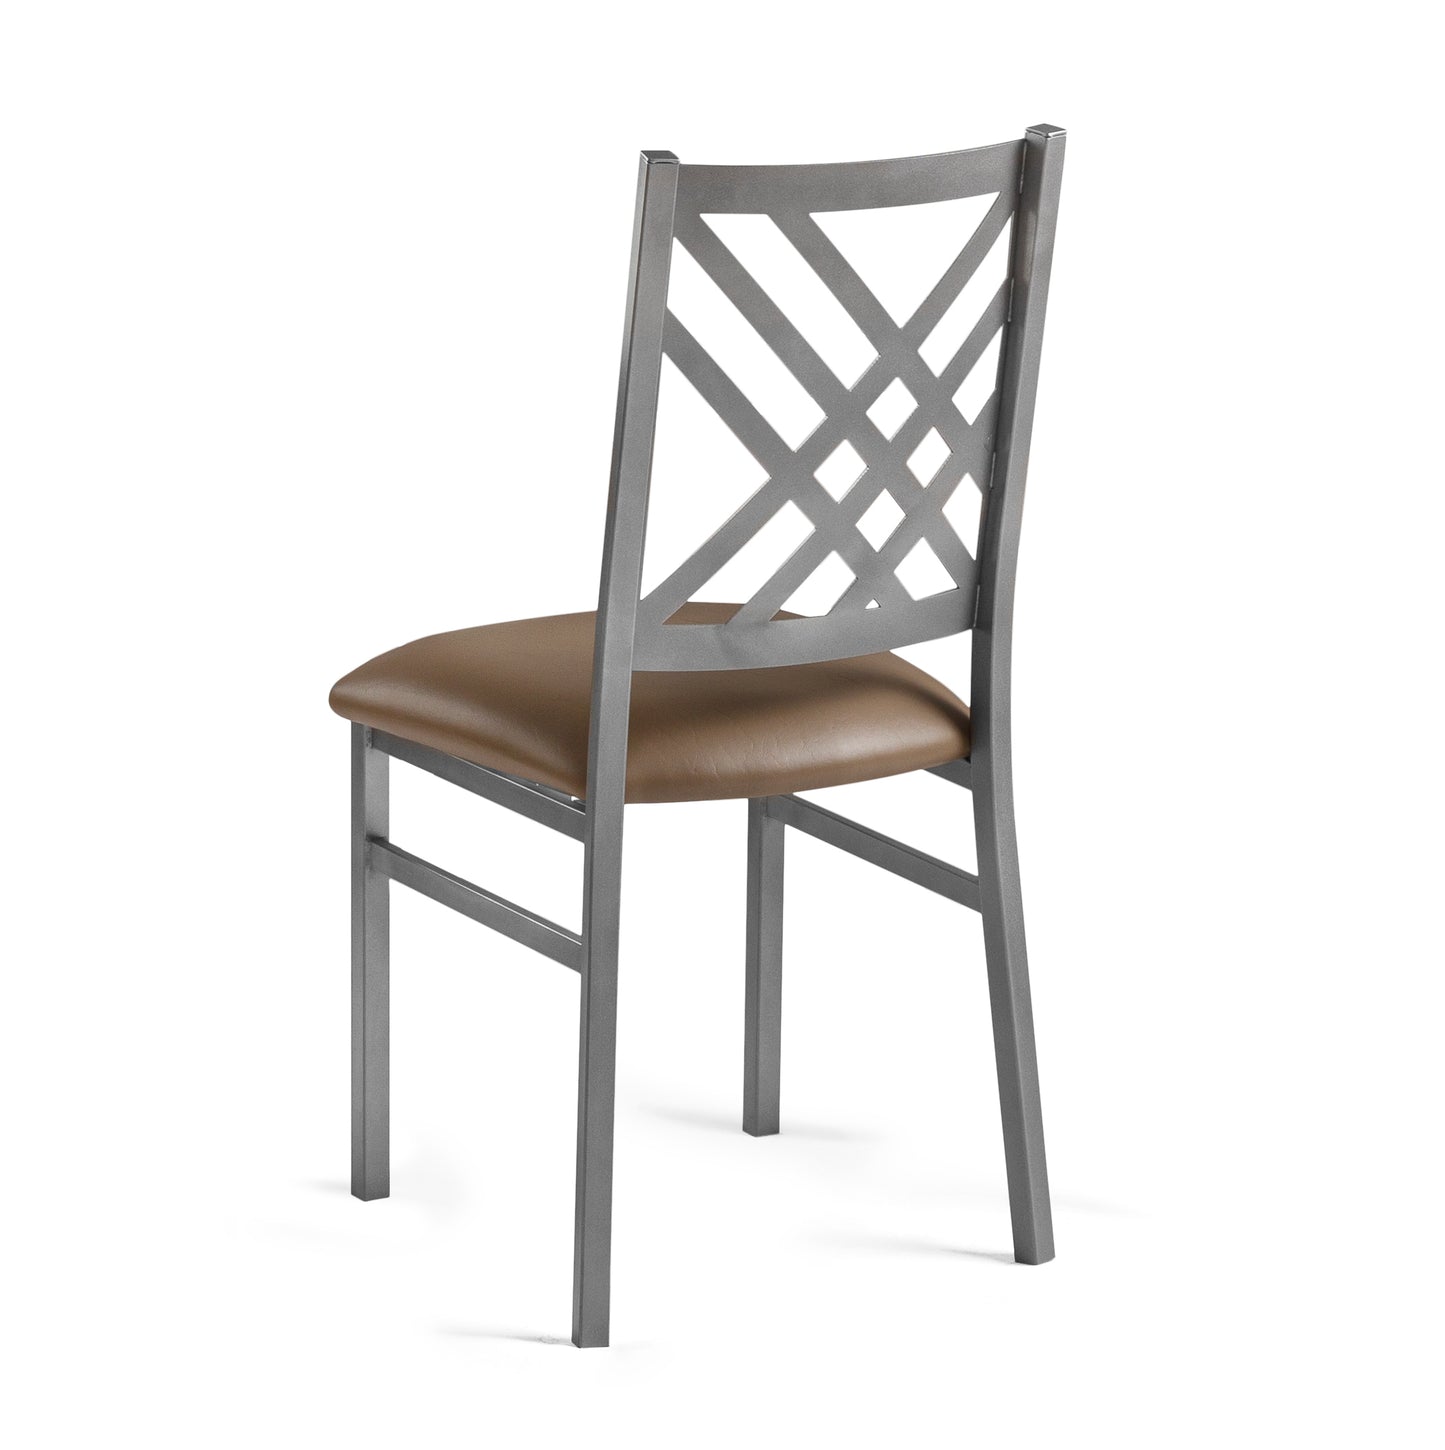 Waffle Chair - 1802